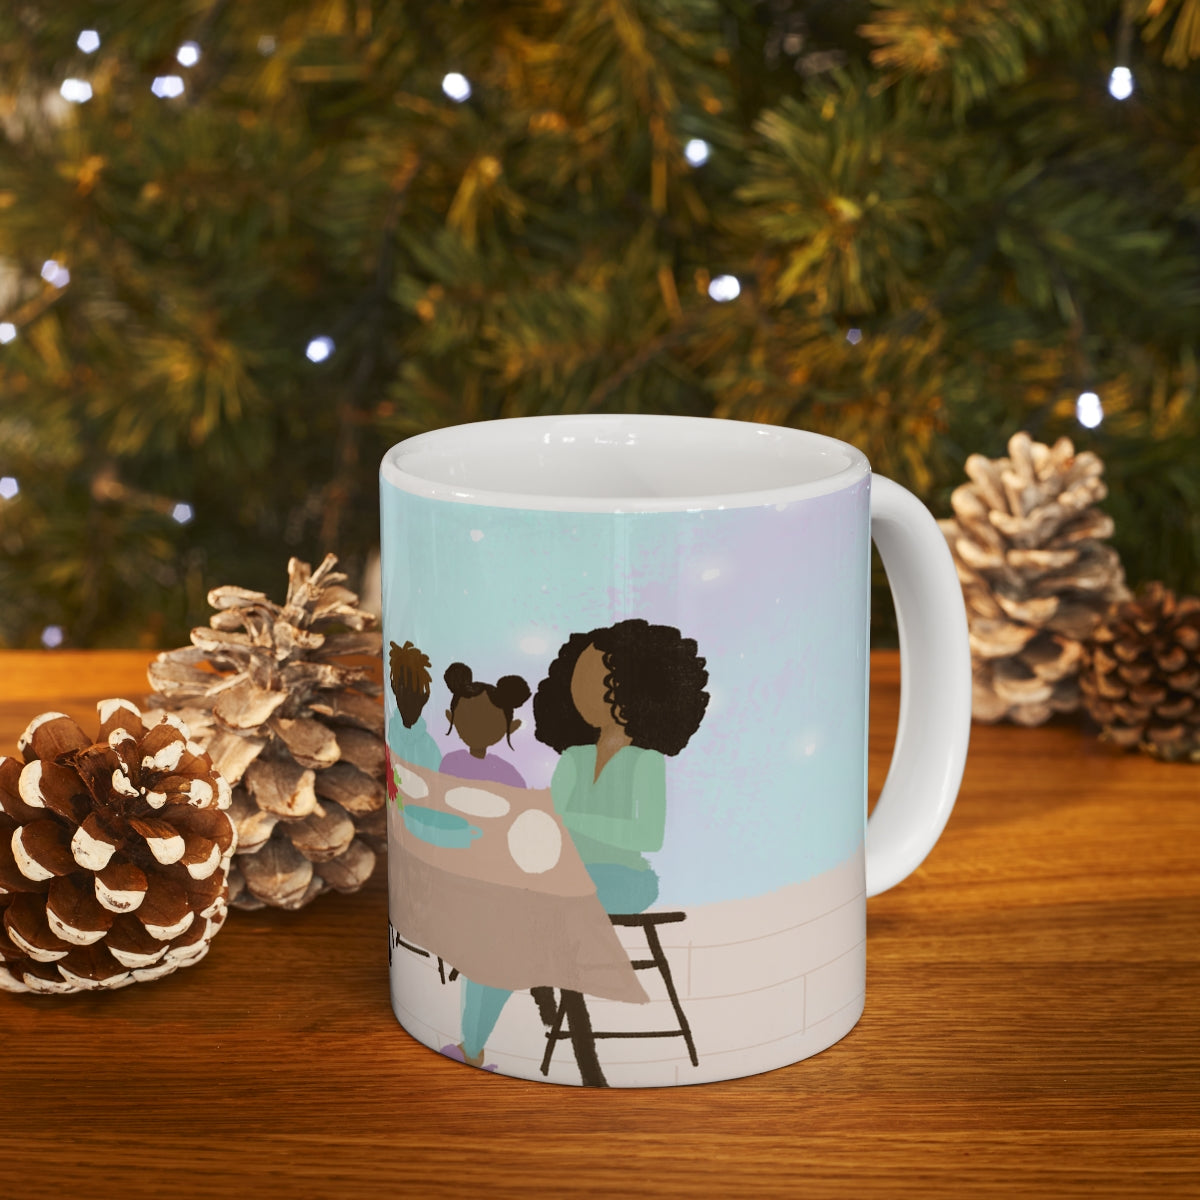 Black People Christmas Holiday Dinner Mug - Santa Cup - African American - Black Woman Art - Brown Skin Men - December 25th - Winter Season